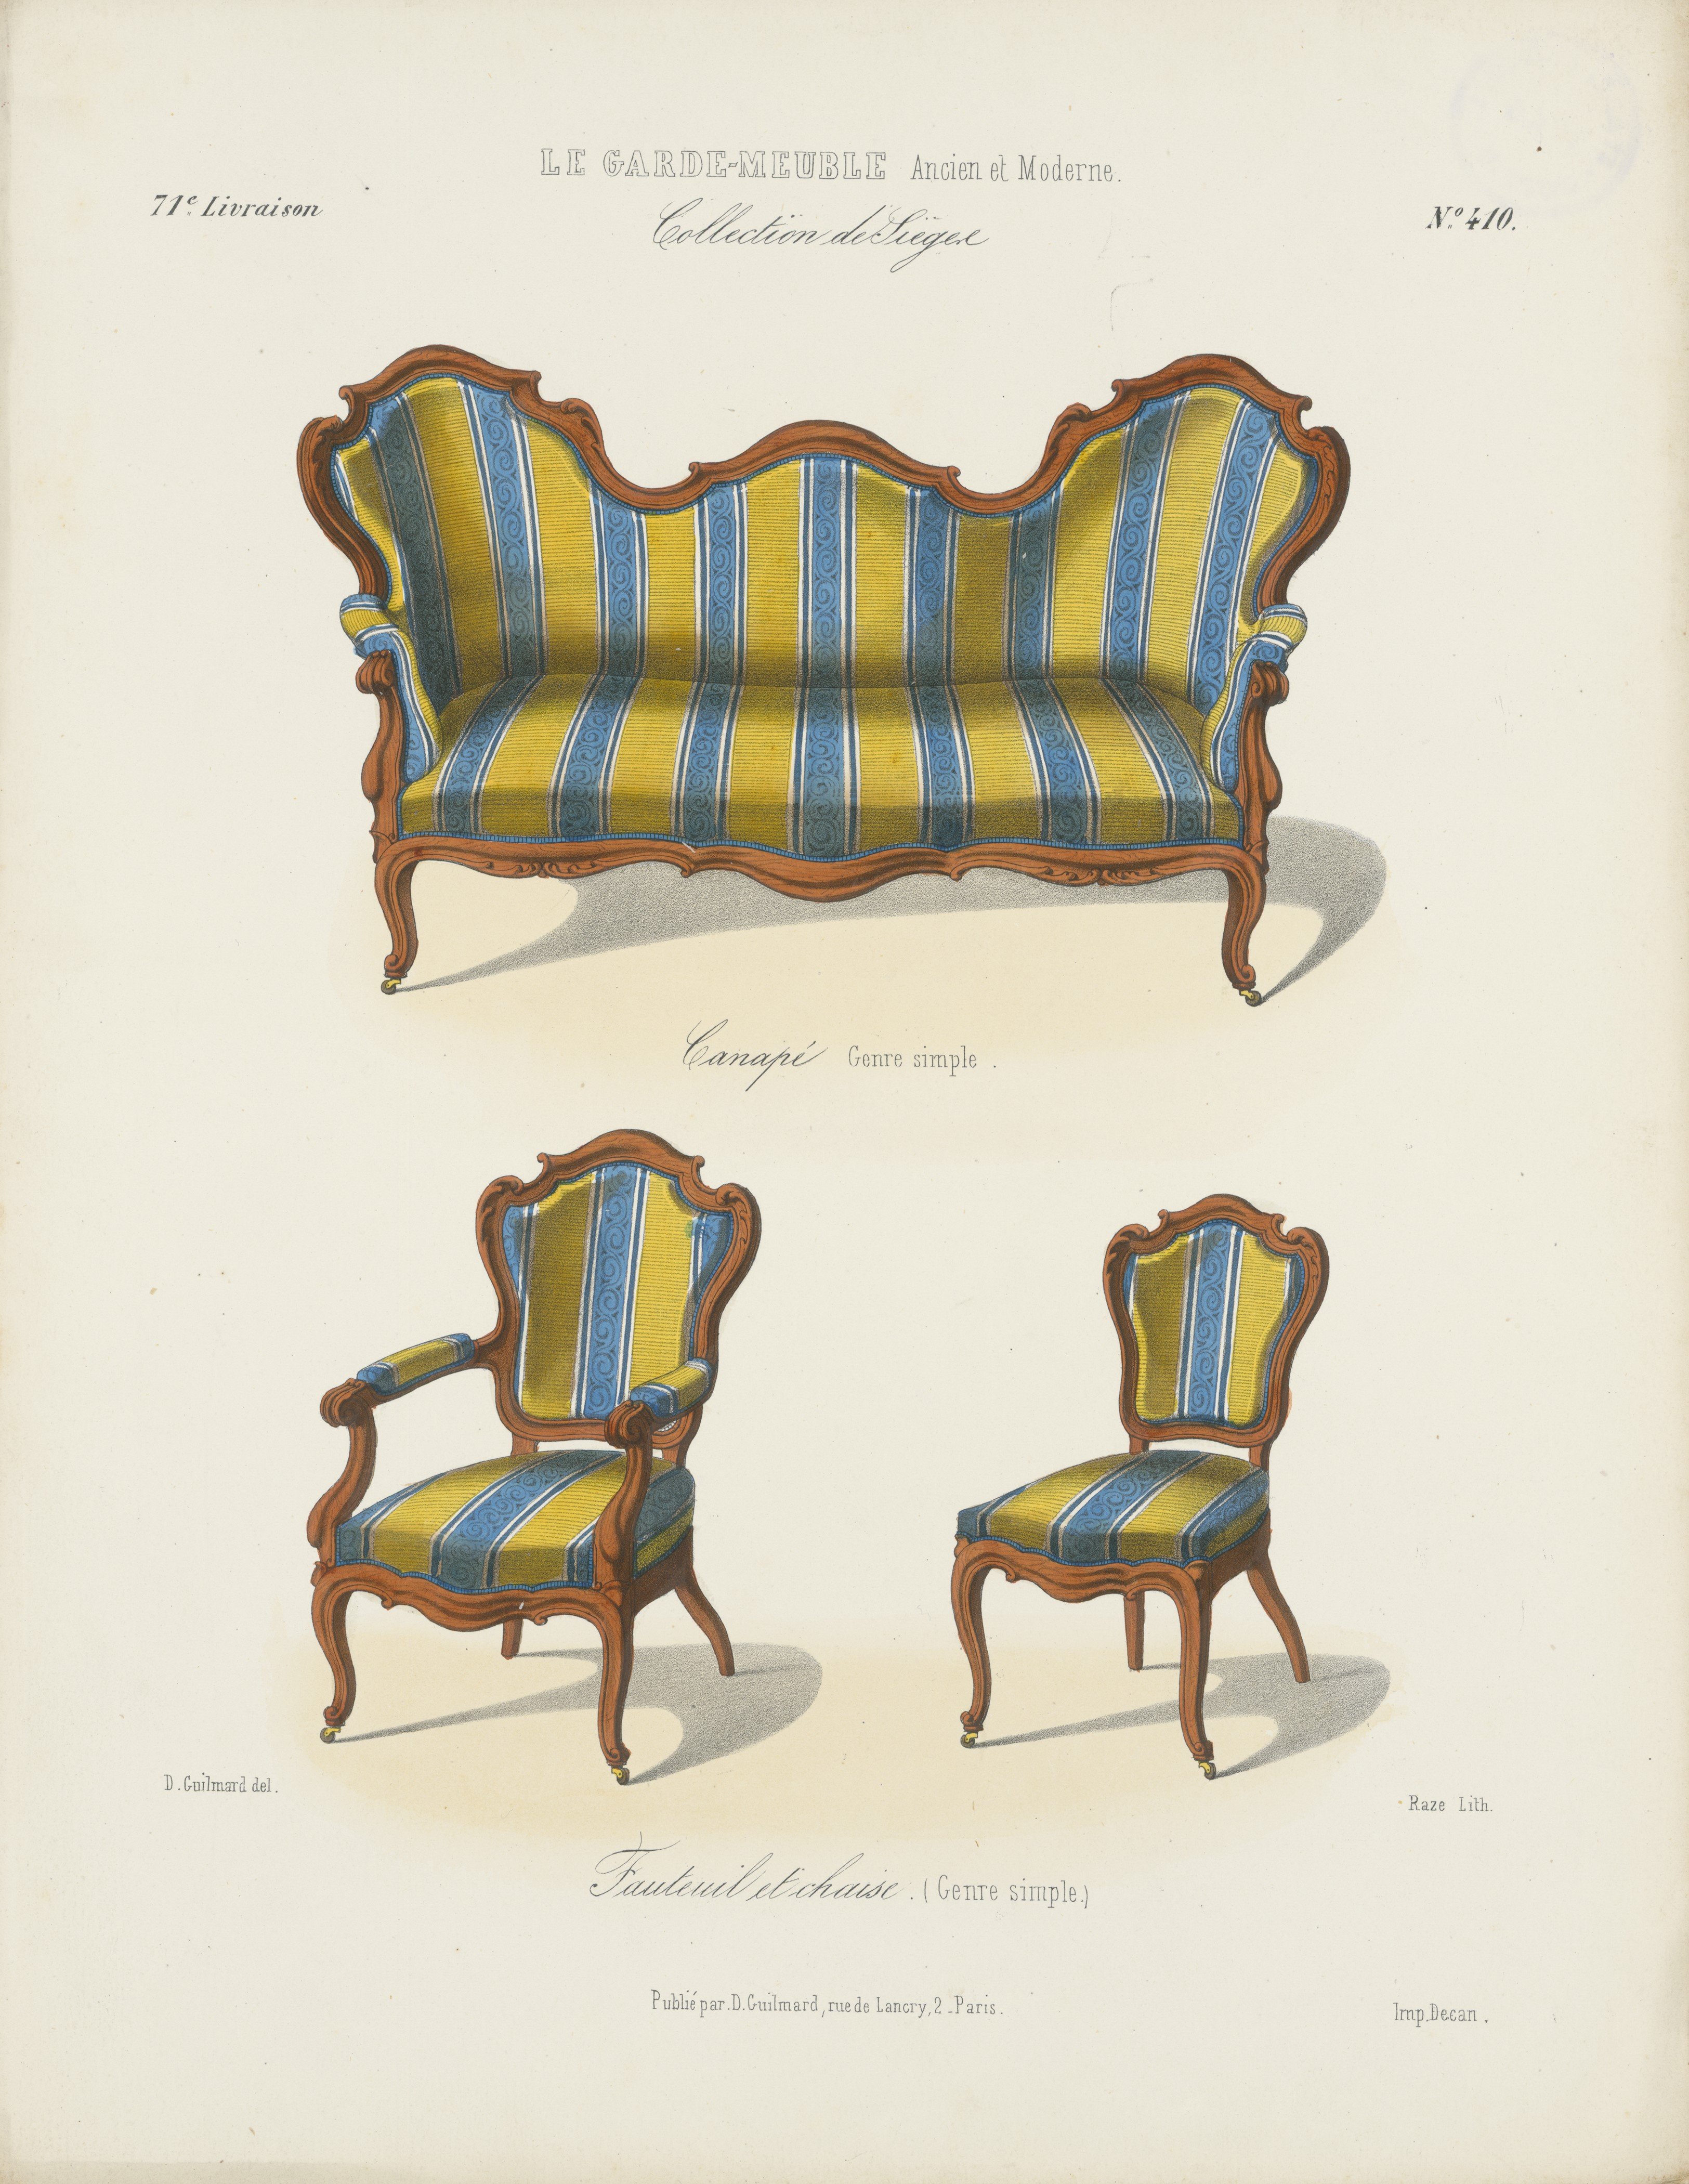 "Canapé Genre simple, Fauteuil et chaise. (Genre simple.)", aus: Le Garde-meuble (Stiftung Fürst-Pückler-Museum Park und Schloss Branitz Public Domain Mark)